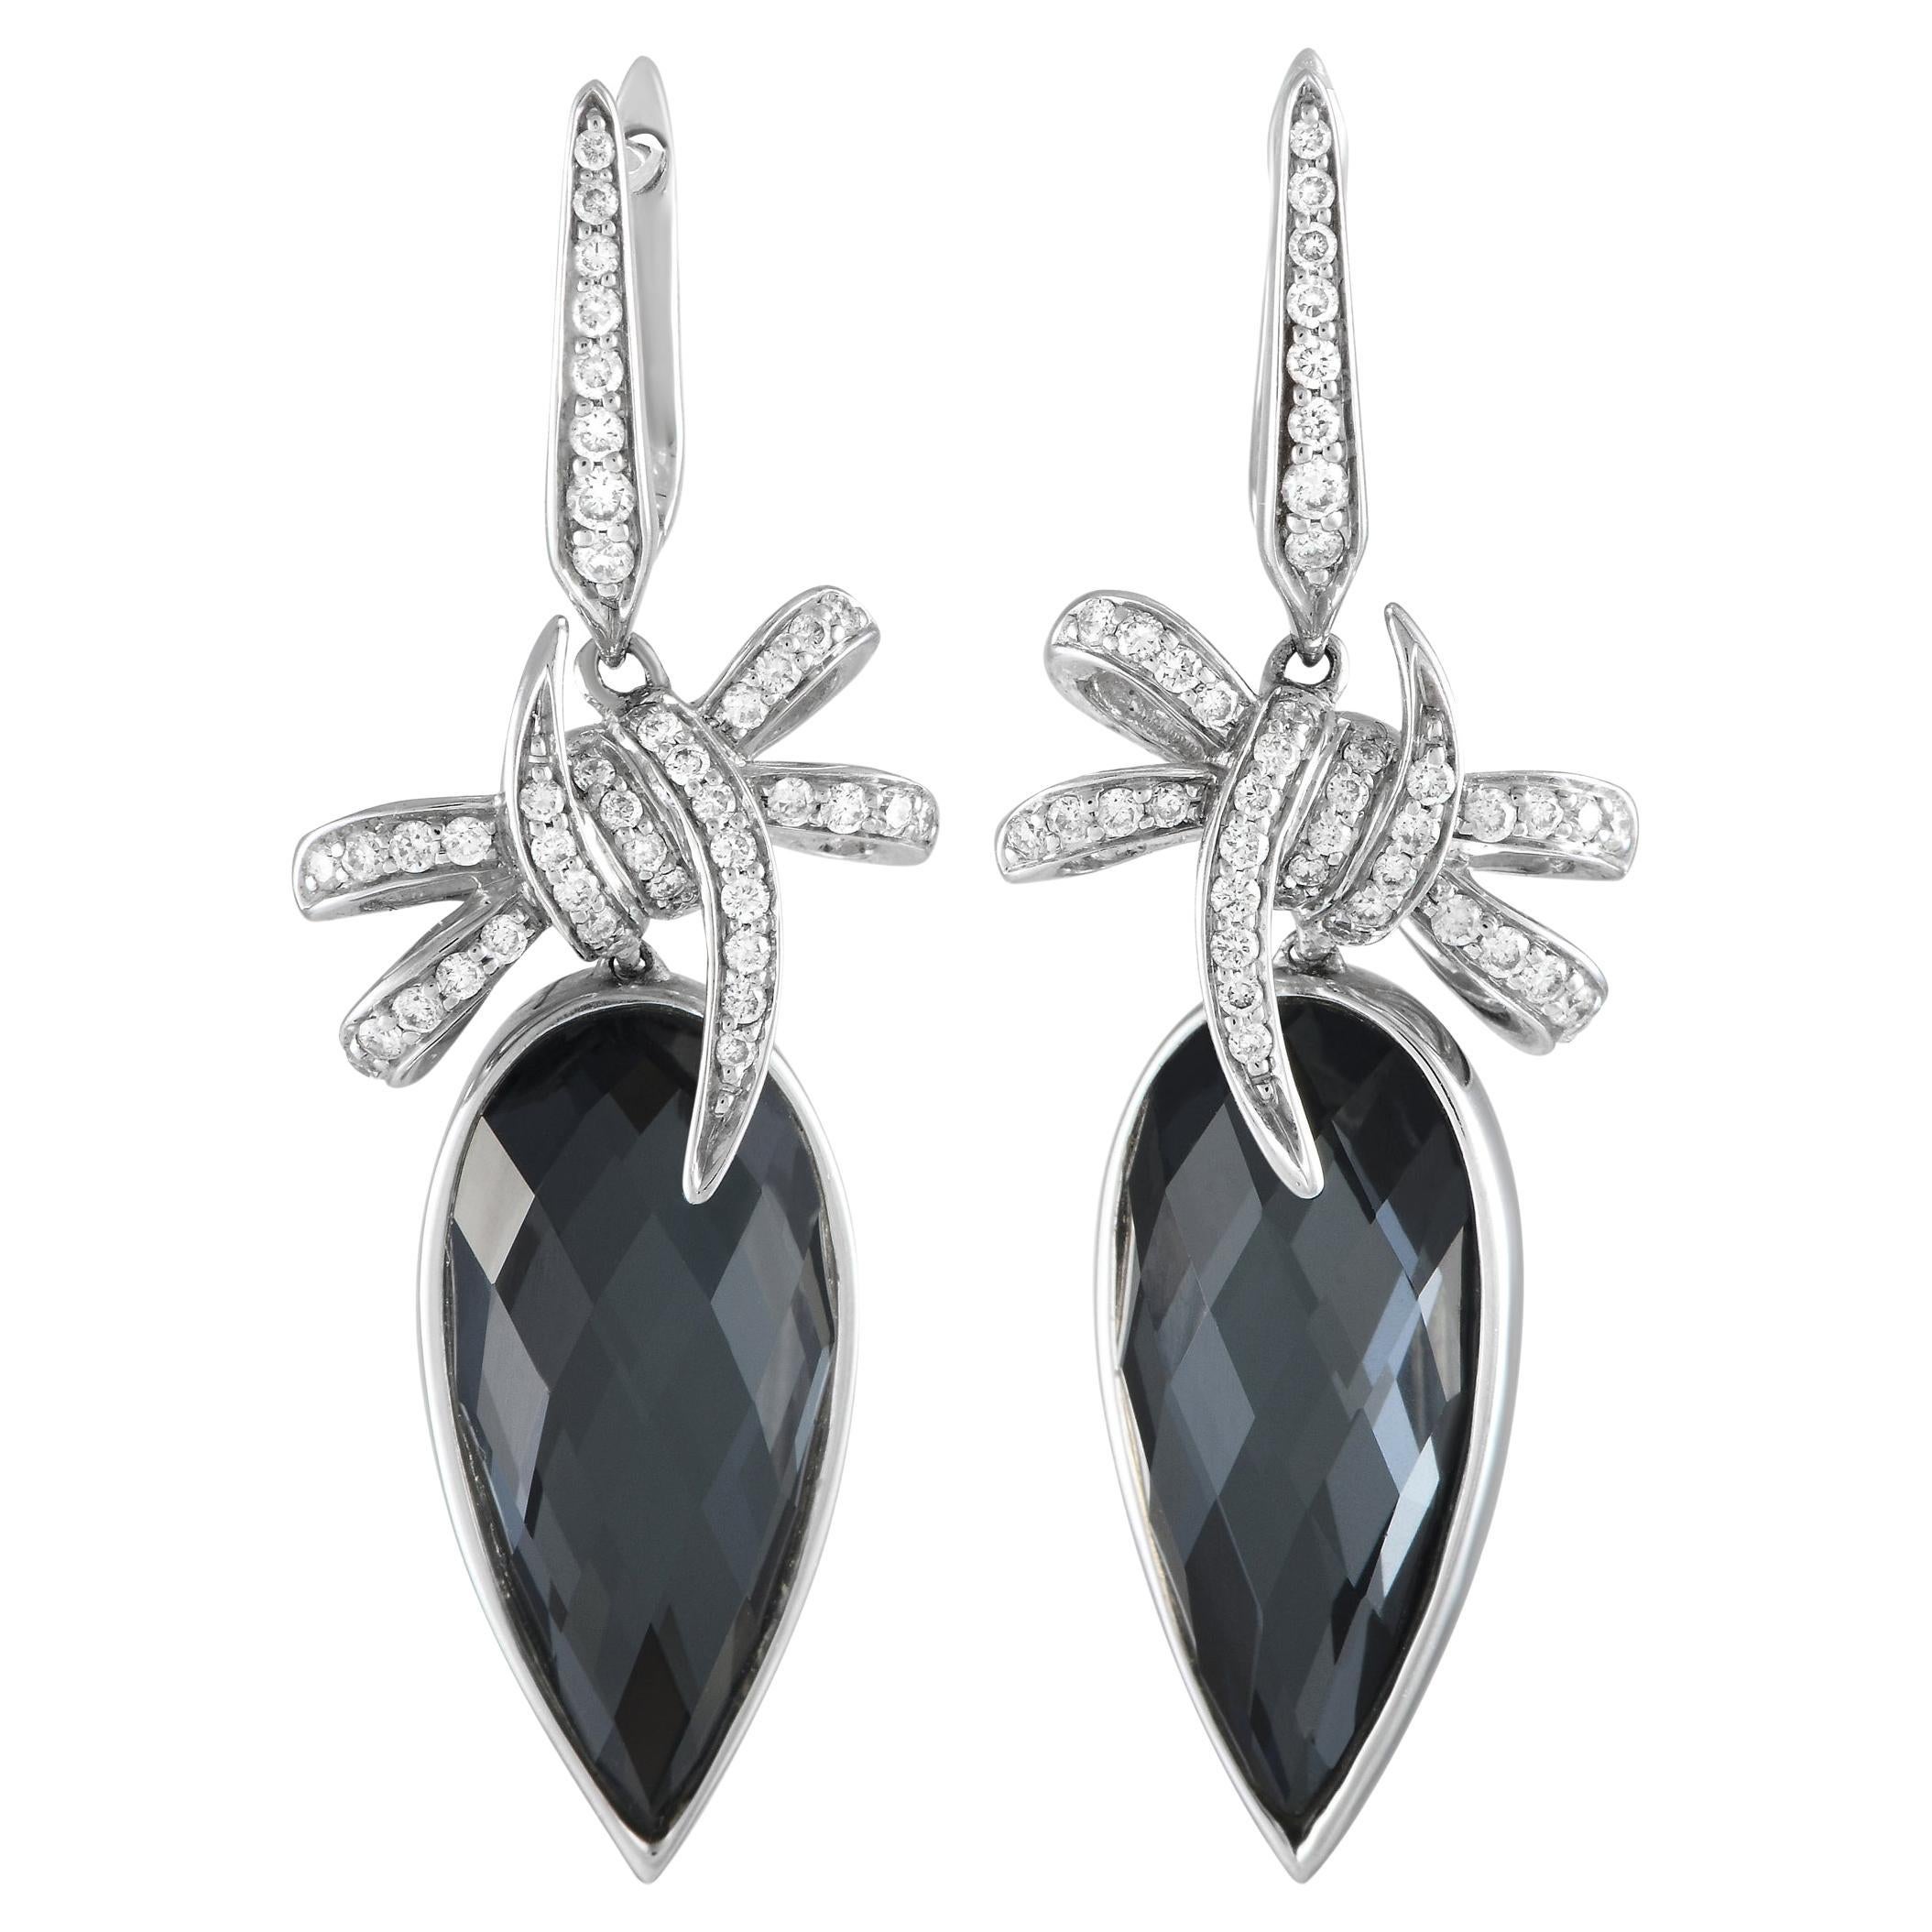 Stephen Webster 18K White Gold 0.44ct Diamond and Black Quartz Crystal Earrings